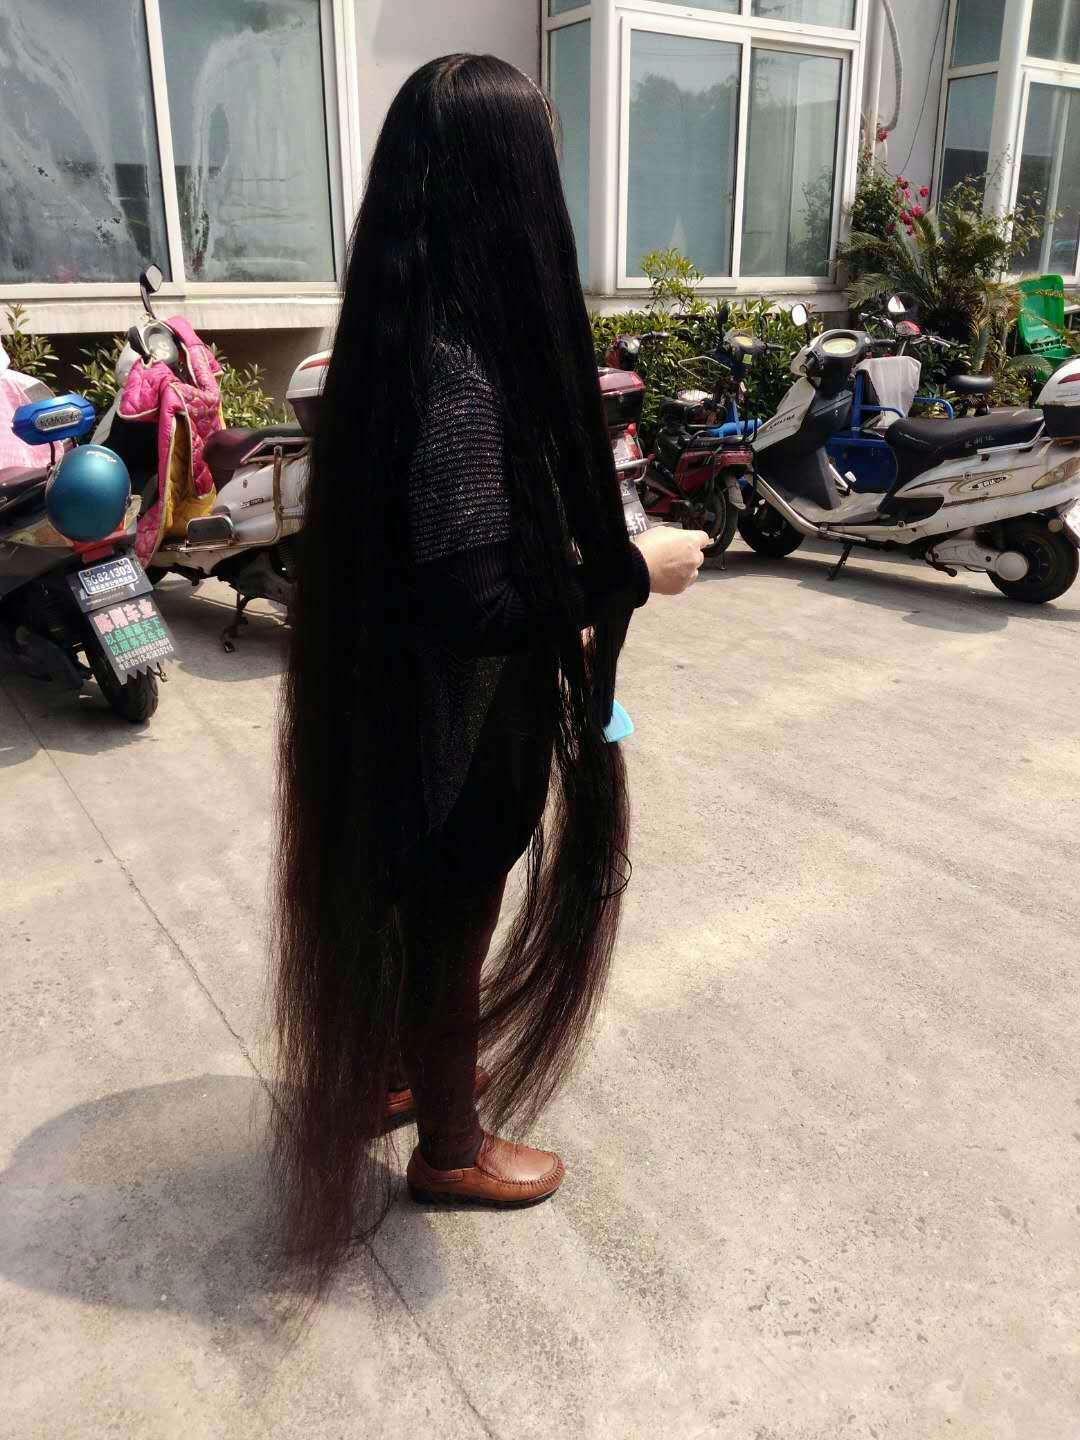 She comb floor length long hair like a cloak